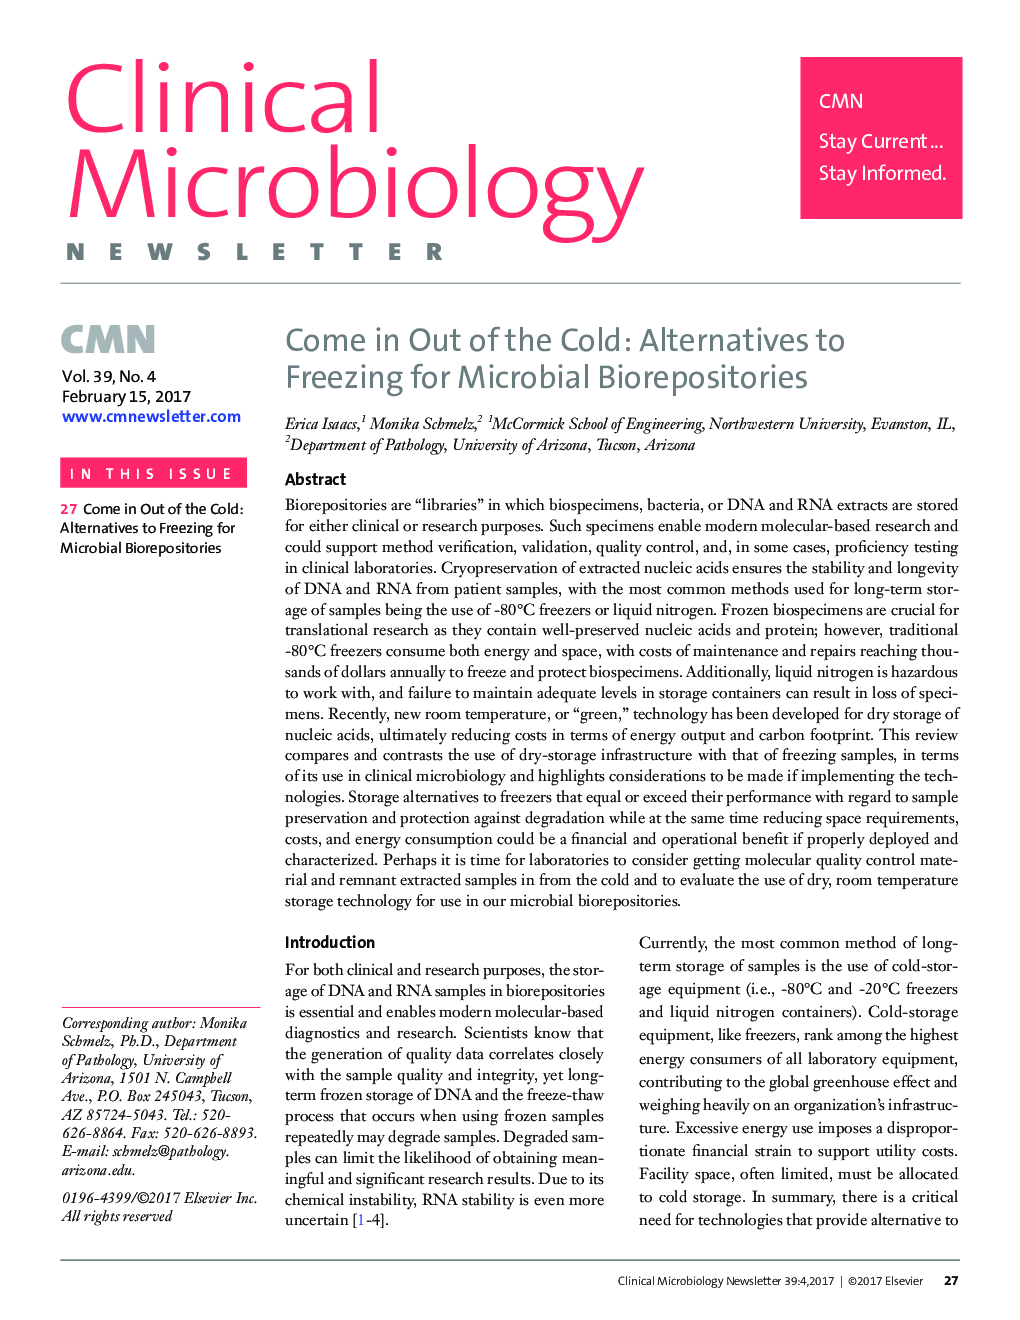 بیرون آمدن از سرد: جایگزینی برای انجماد برای مخازن بیولوژیکی میکروبی 